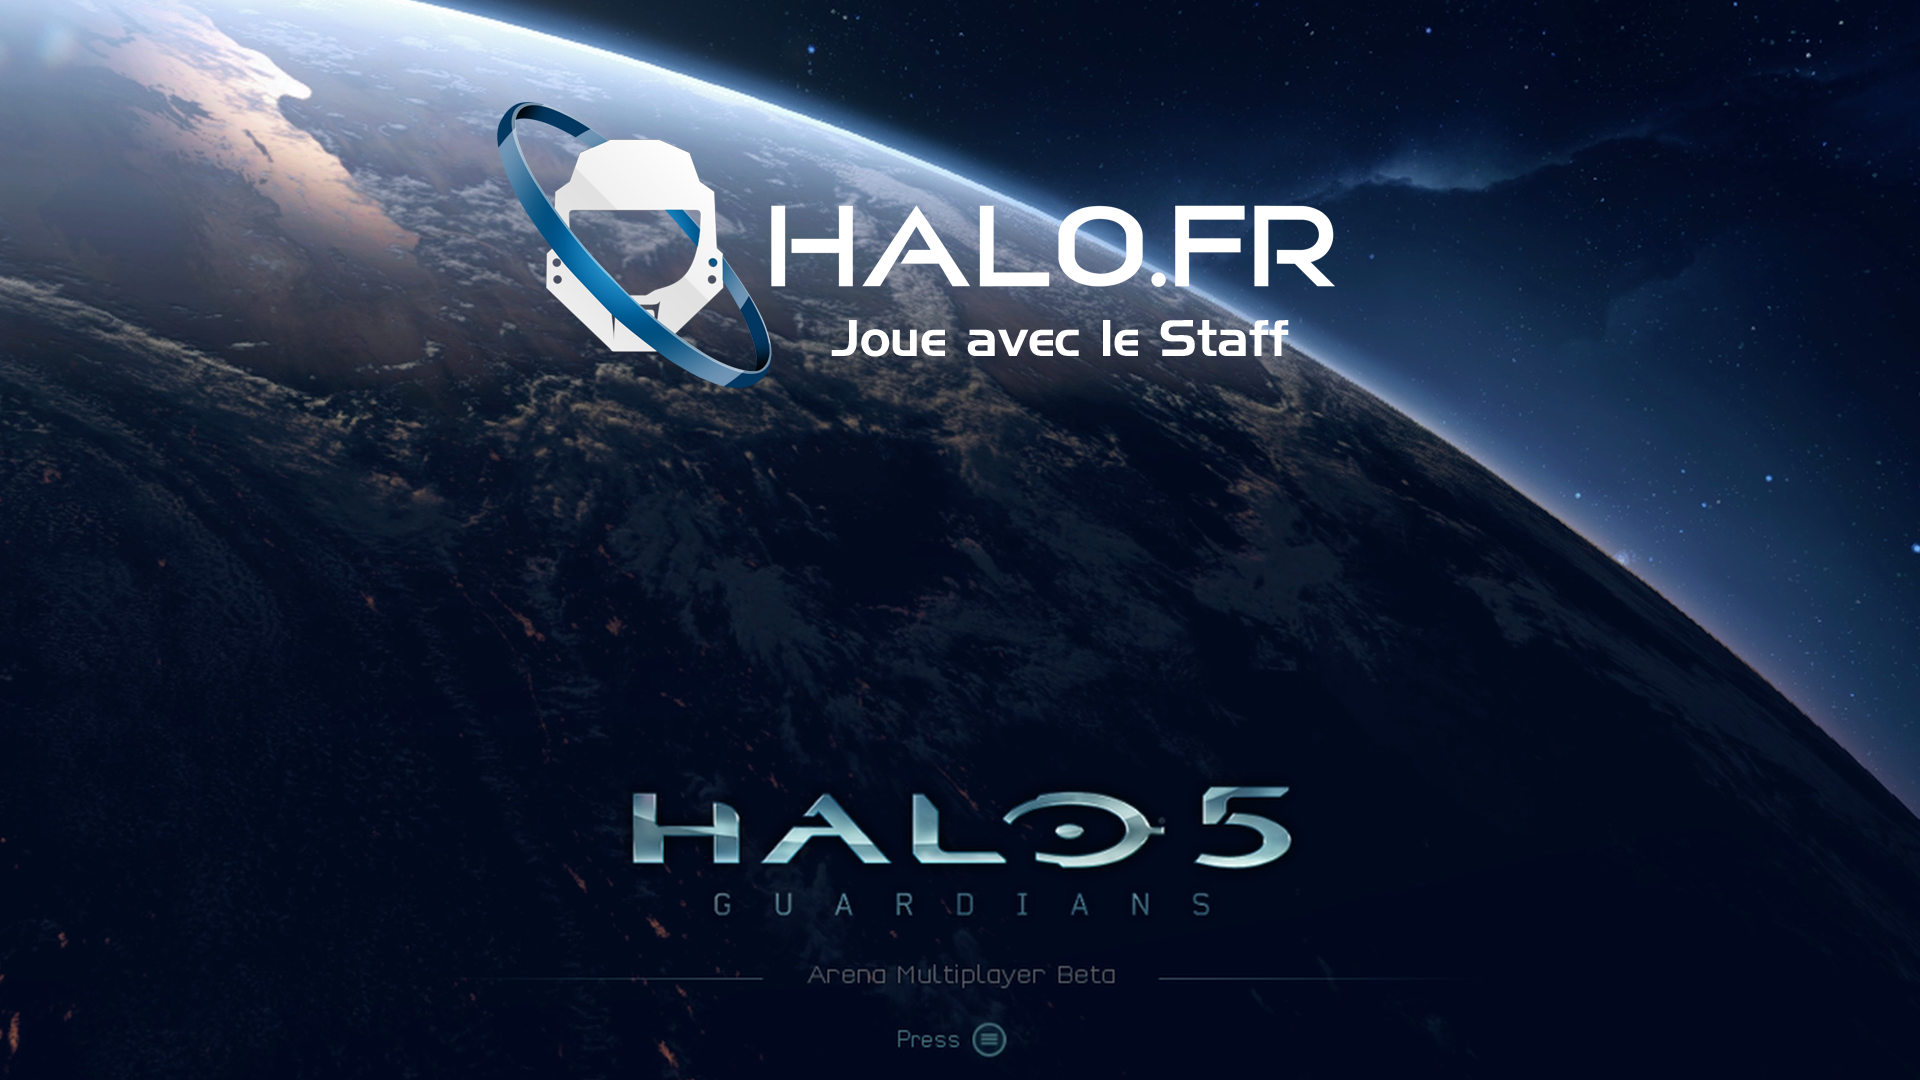 Soirée avec le Staff sur Halo 5 !